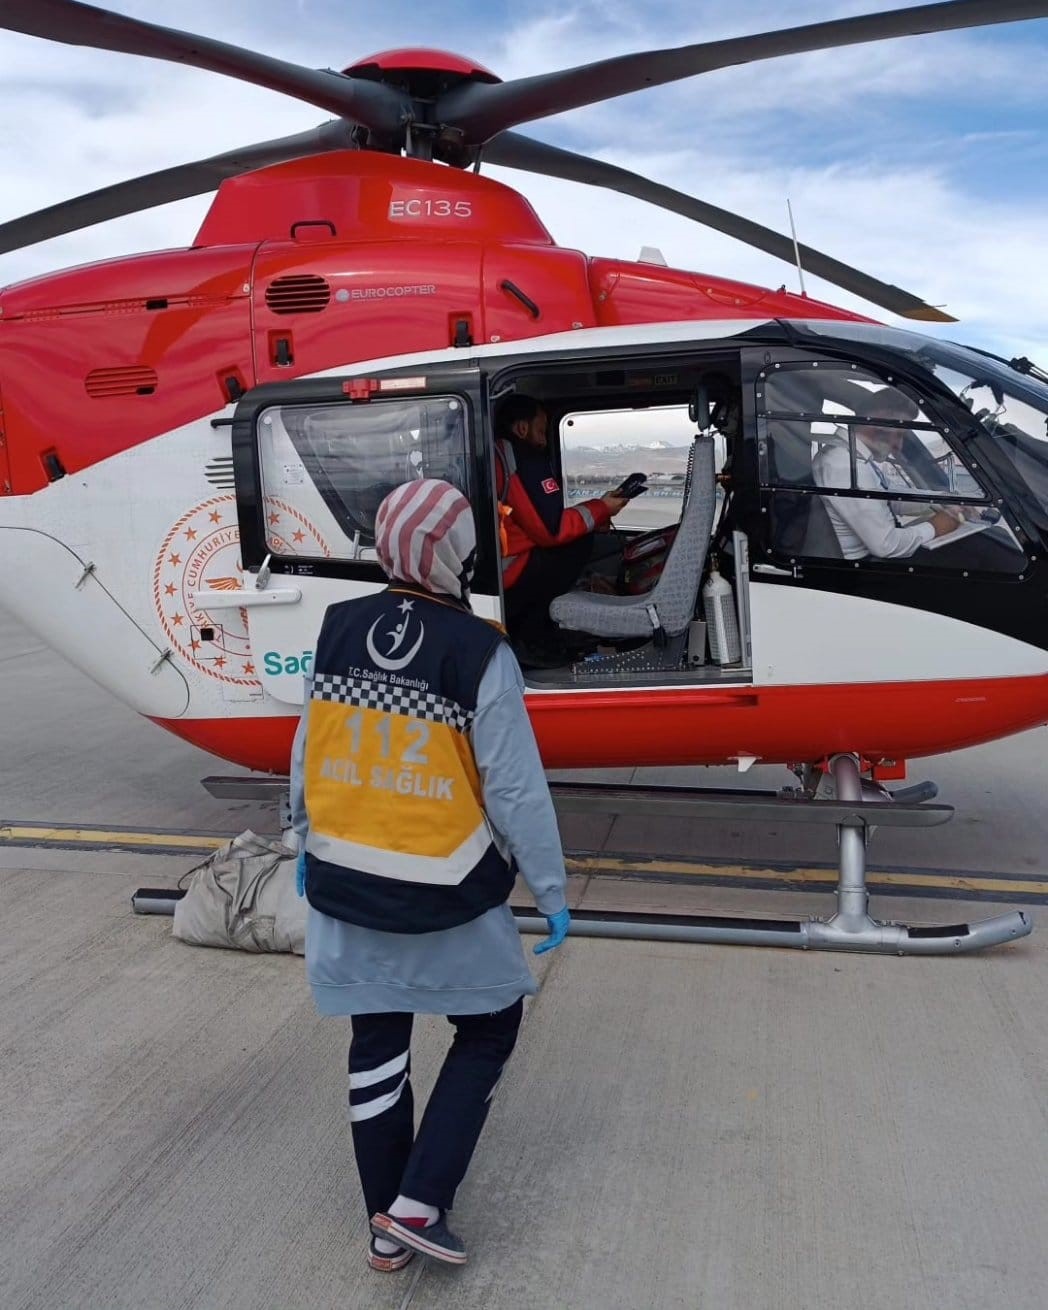 Apandisit hastası helikopterle Van’a sevk edildi